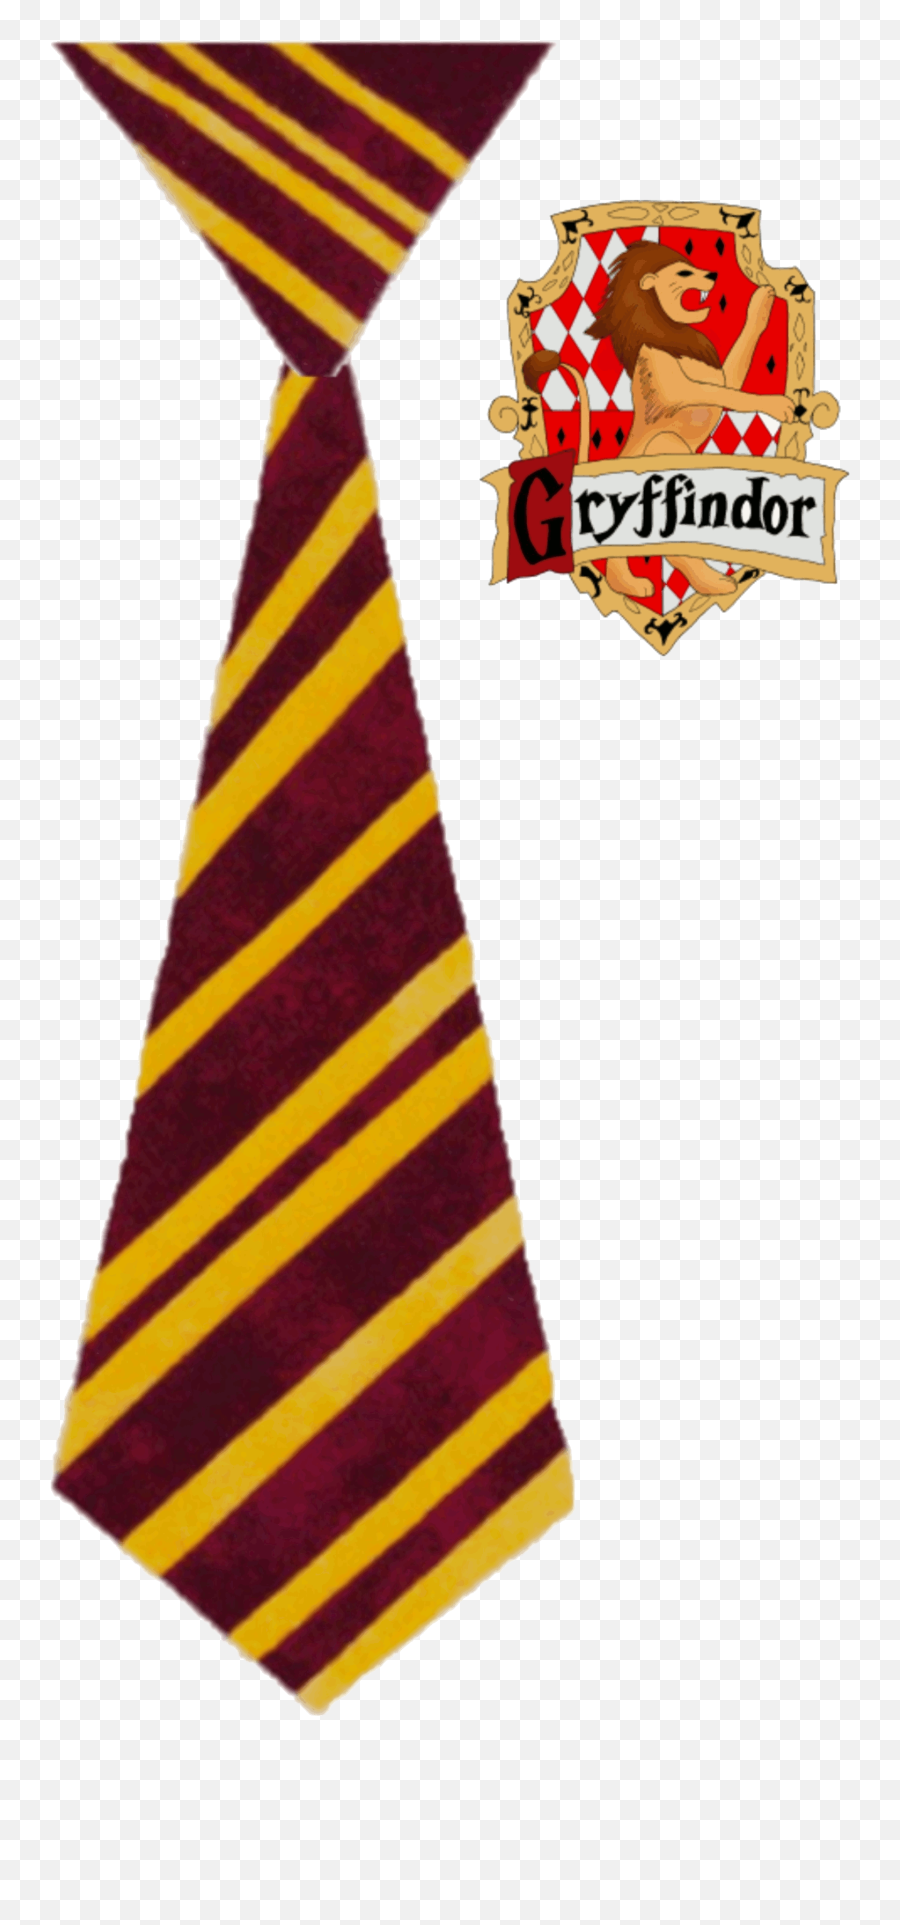 Gryffindor Tie Clipart - Harry Potter Gryffindor Tie Png,Gryffindor